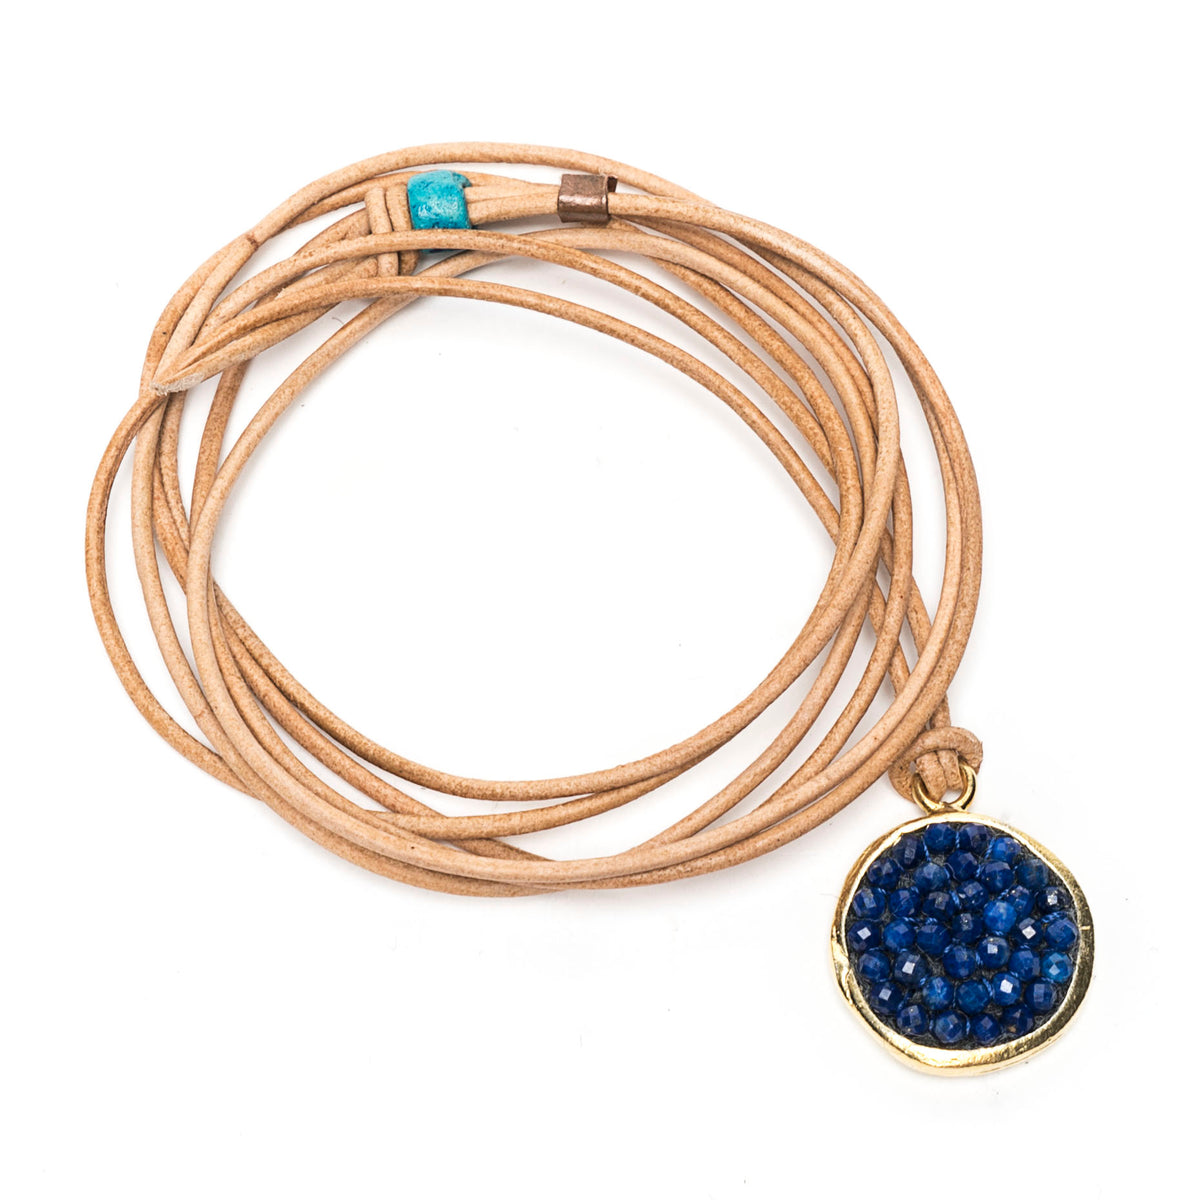 Lapis Lazuli Iconic Mosaic Wrap Bracelet and/or Necklace